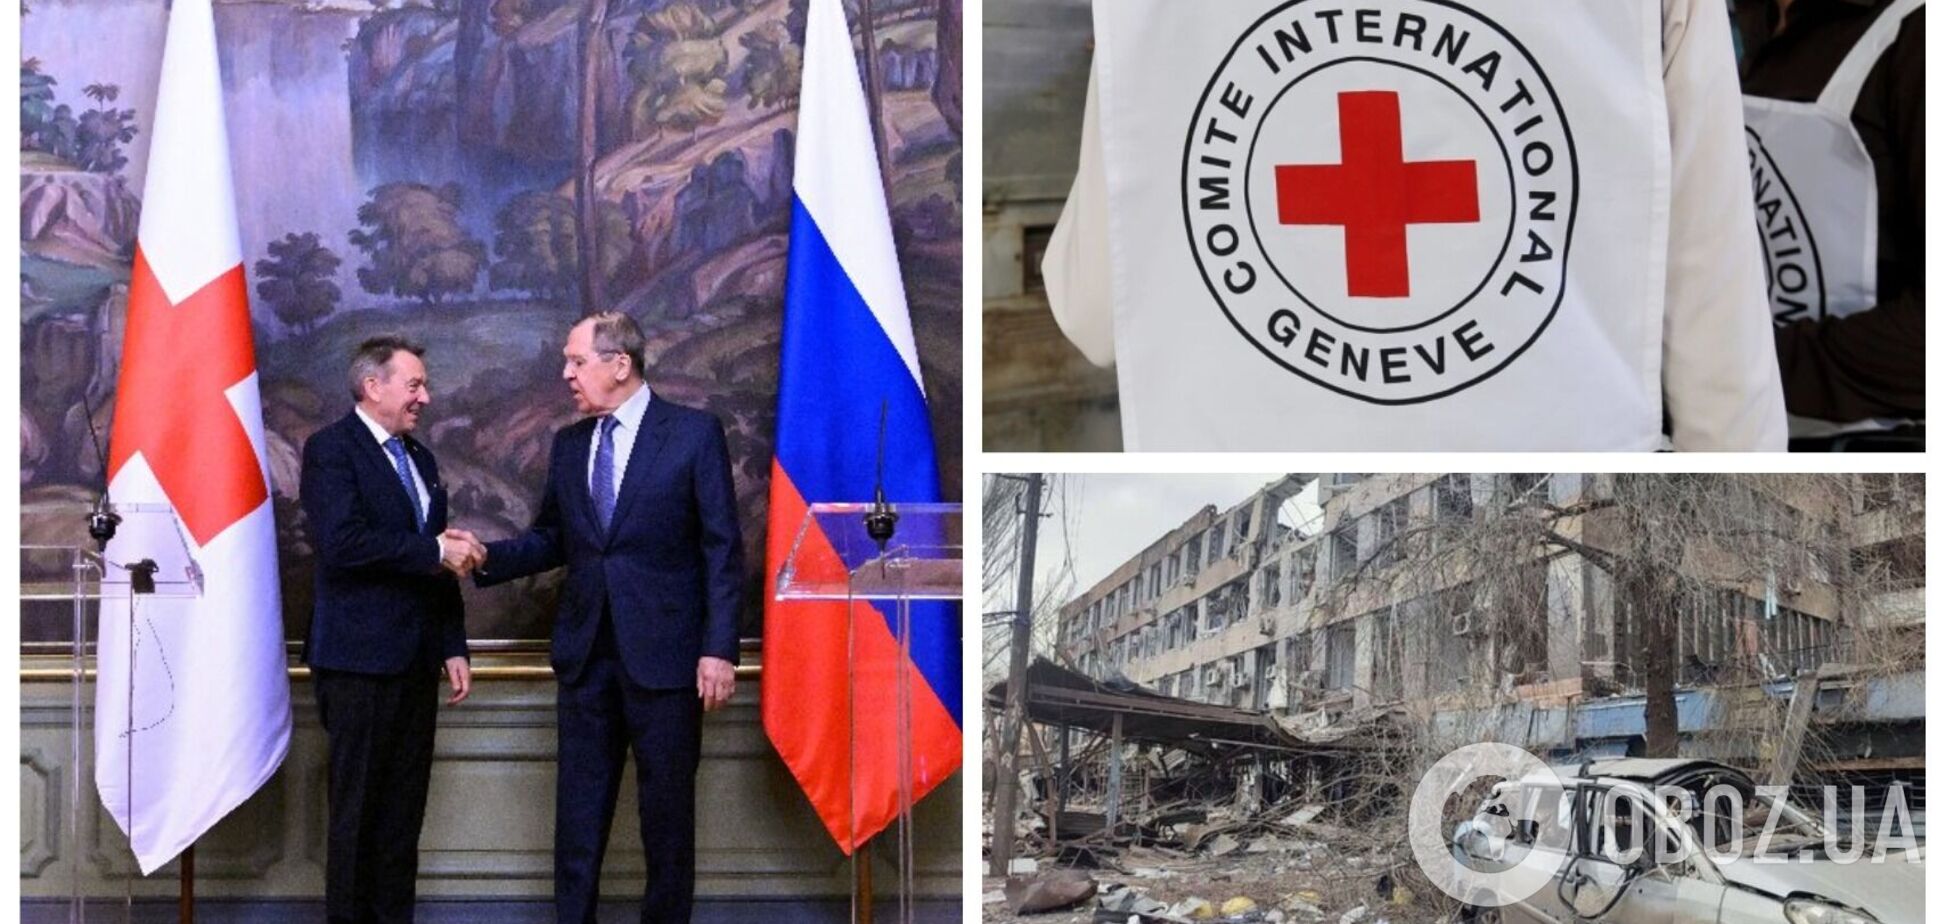 Глава Красного Креста пожал руку Лаврову, который оправдывает войну против Украины и убийства мирных жителей. Фото